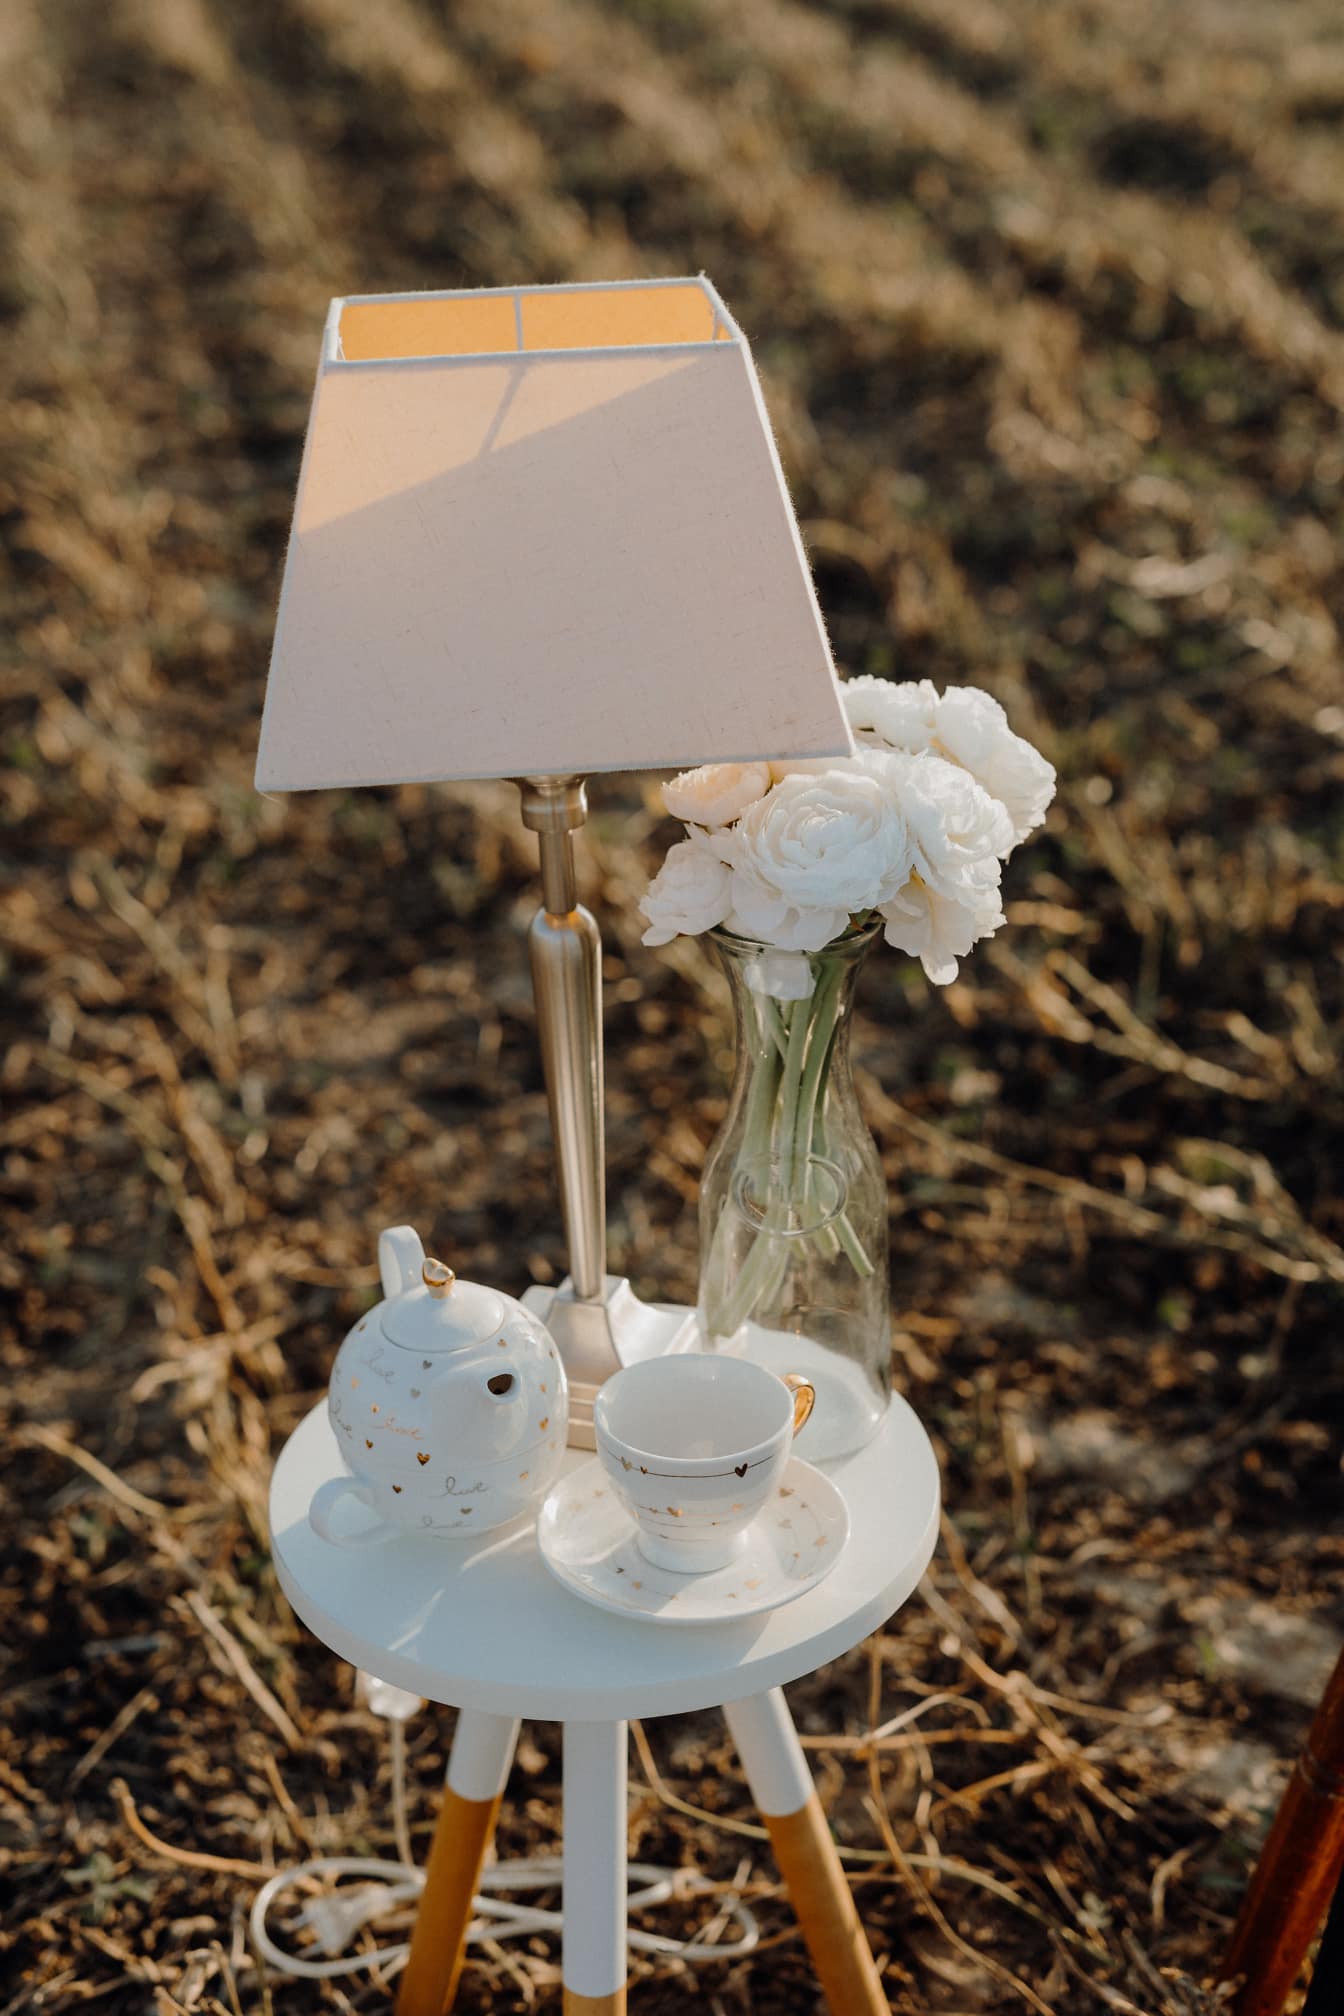 Стіл з сучасною лампою, порцеляновим чайником і скляною вазою з квітами білих троянд